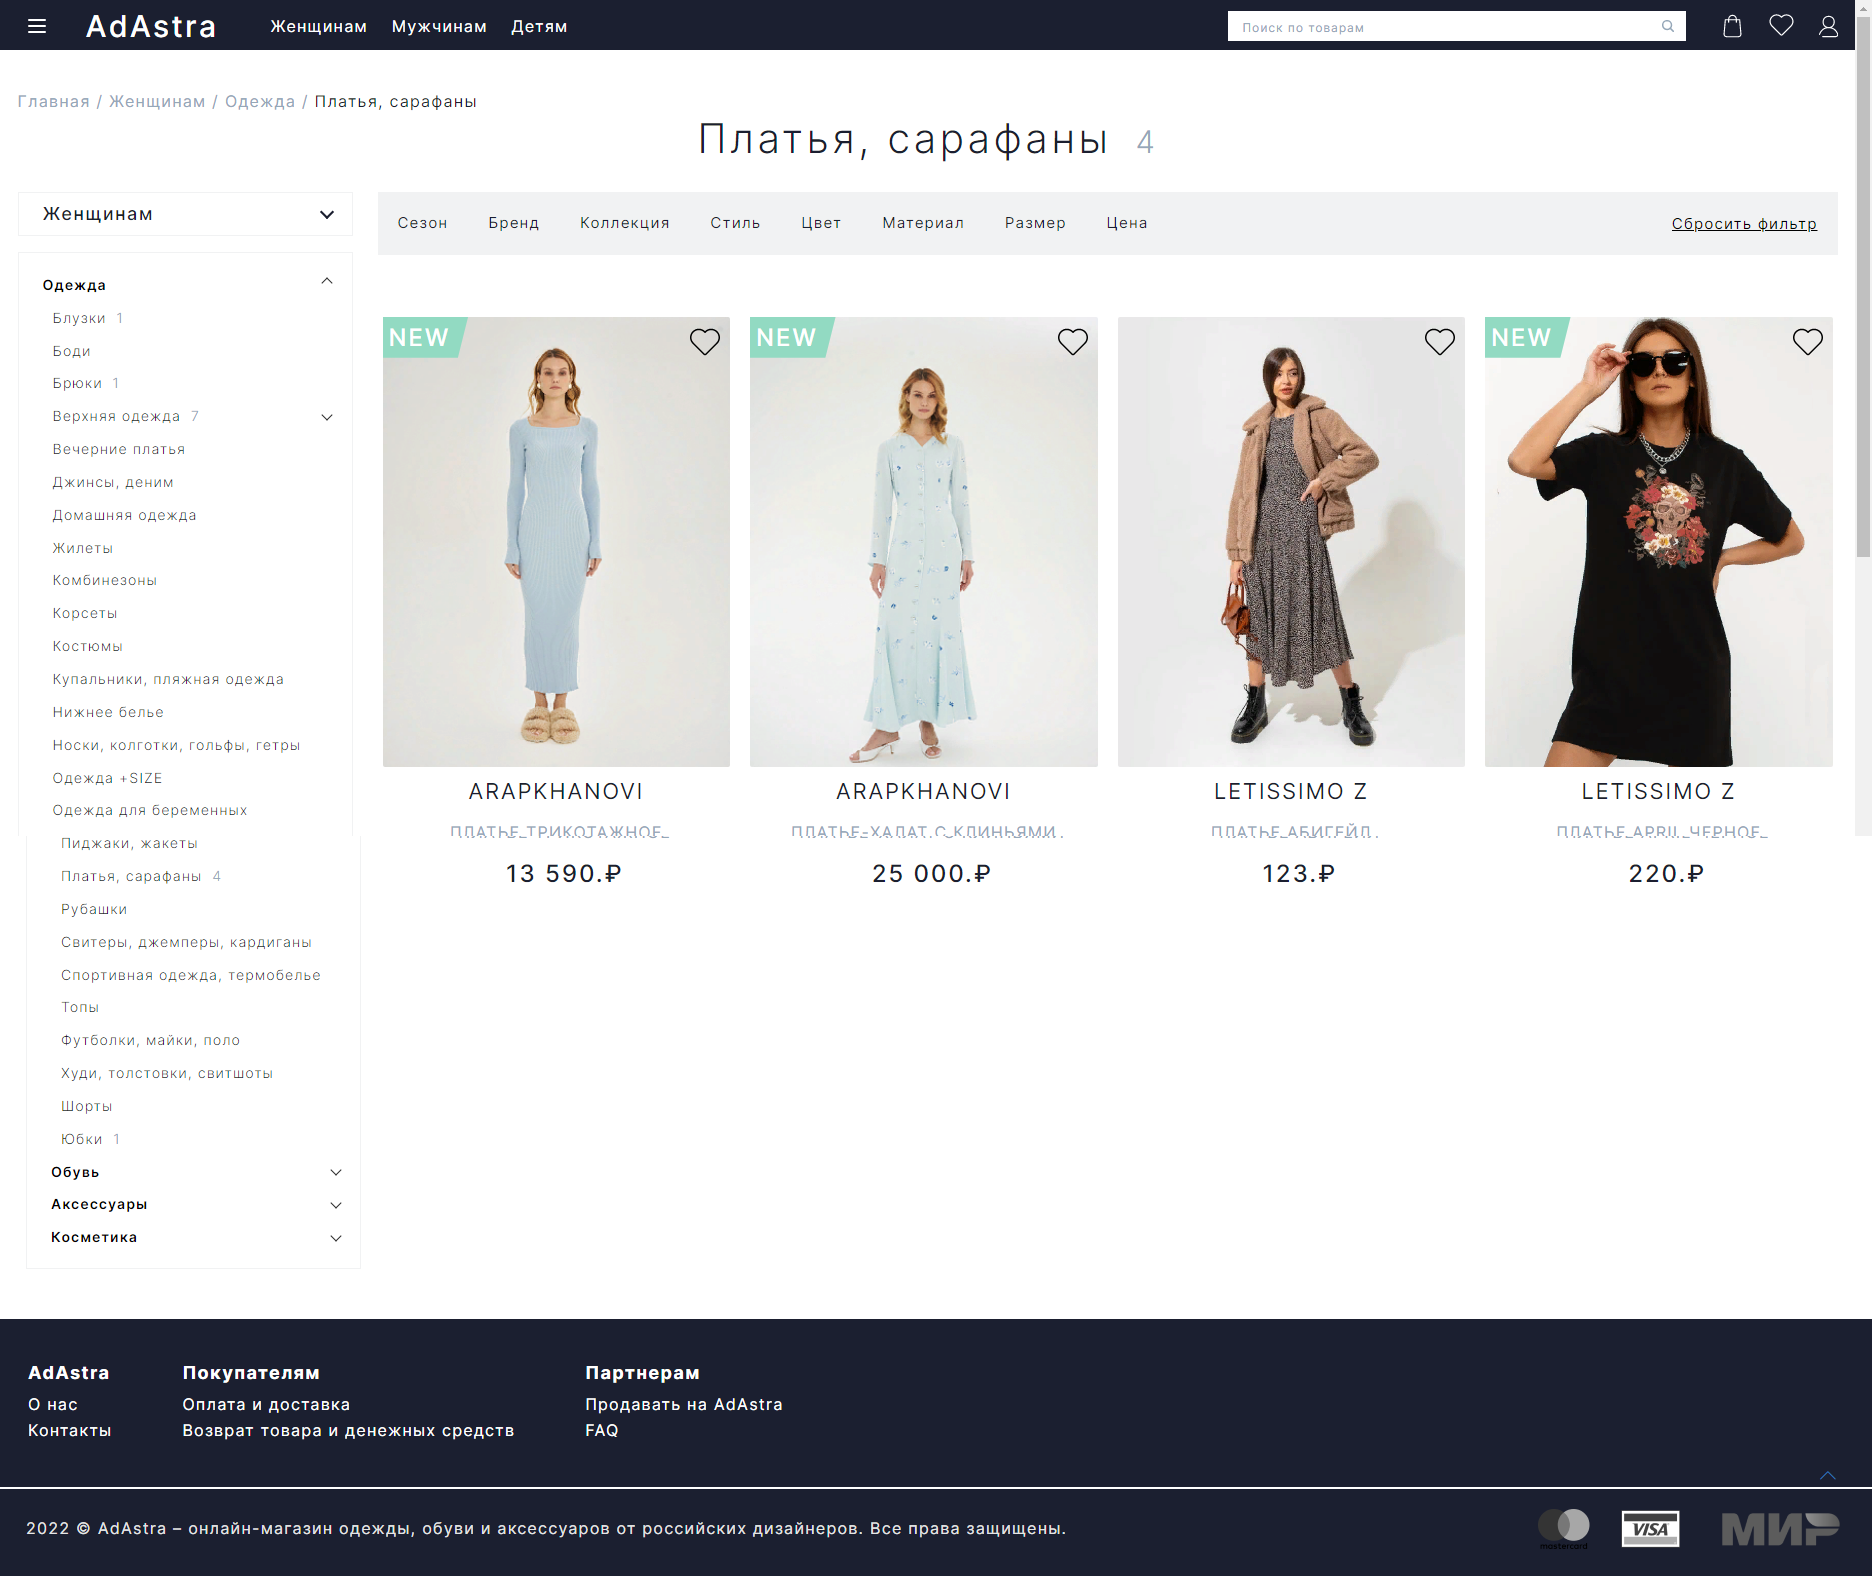 интернет-магазин одежды, обуви и аксессуаров